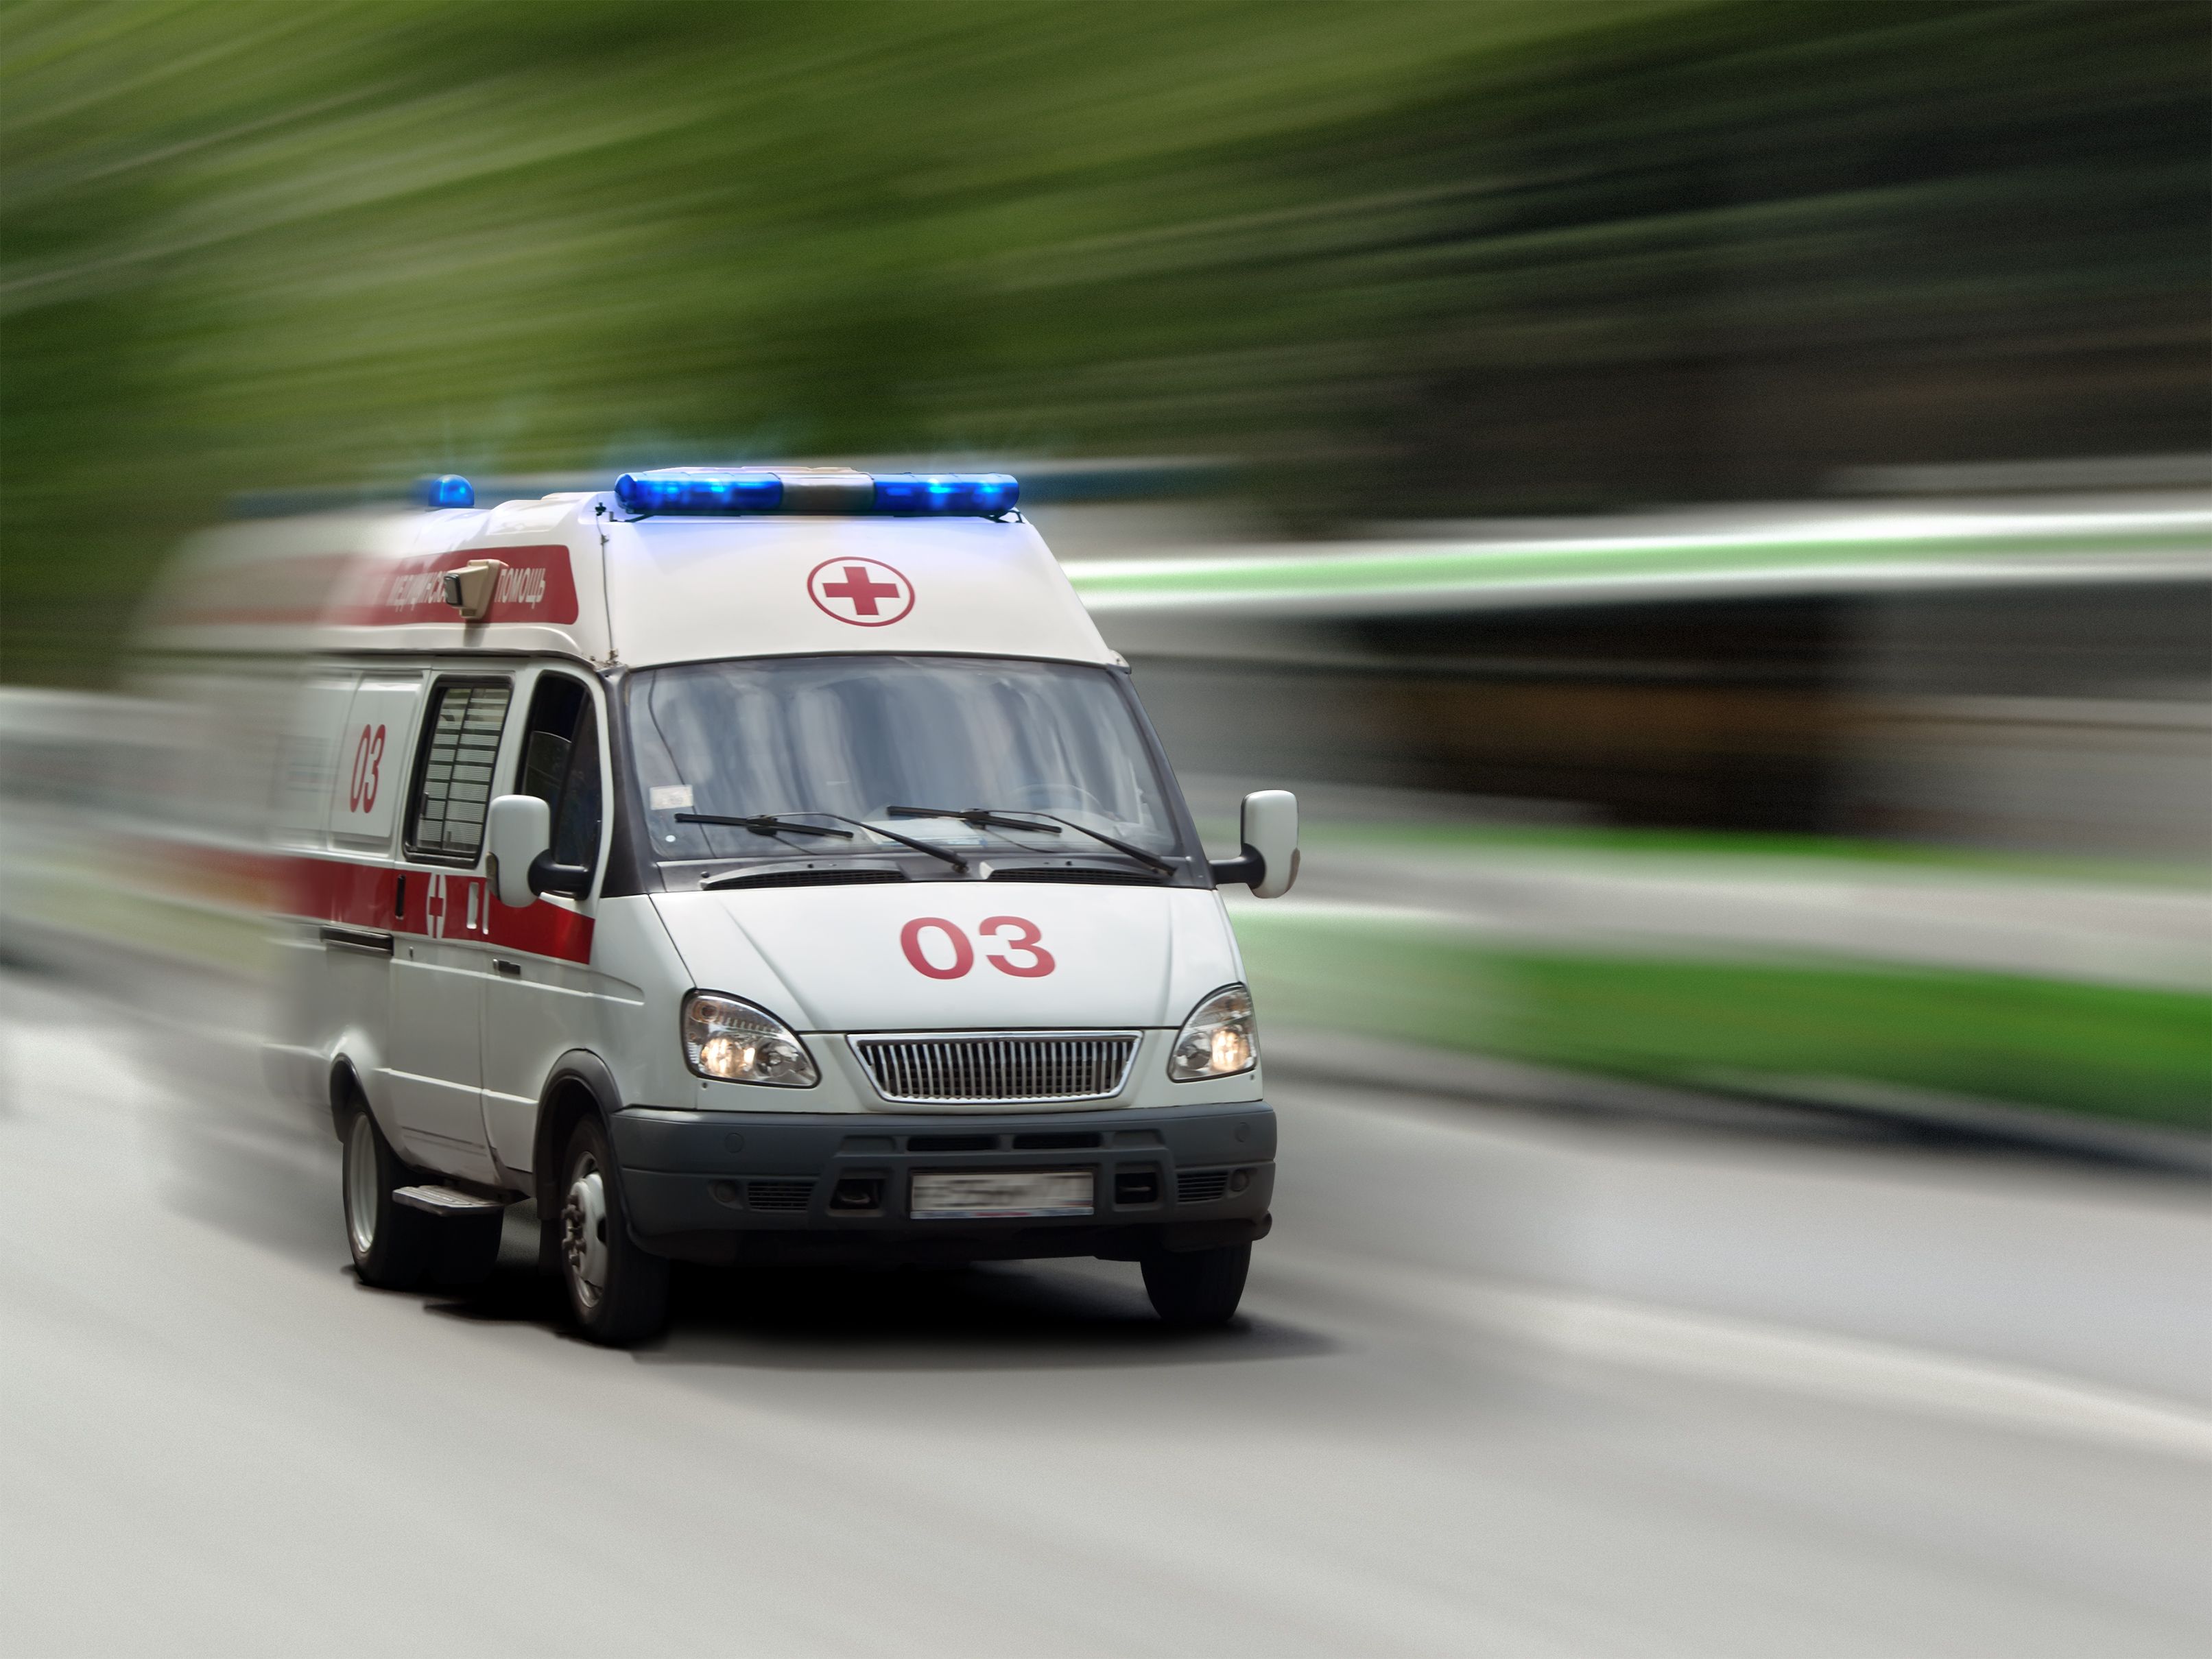 Ребенок получил осколочное ранение при артобстреле ВСУ Стаханова